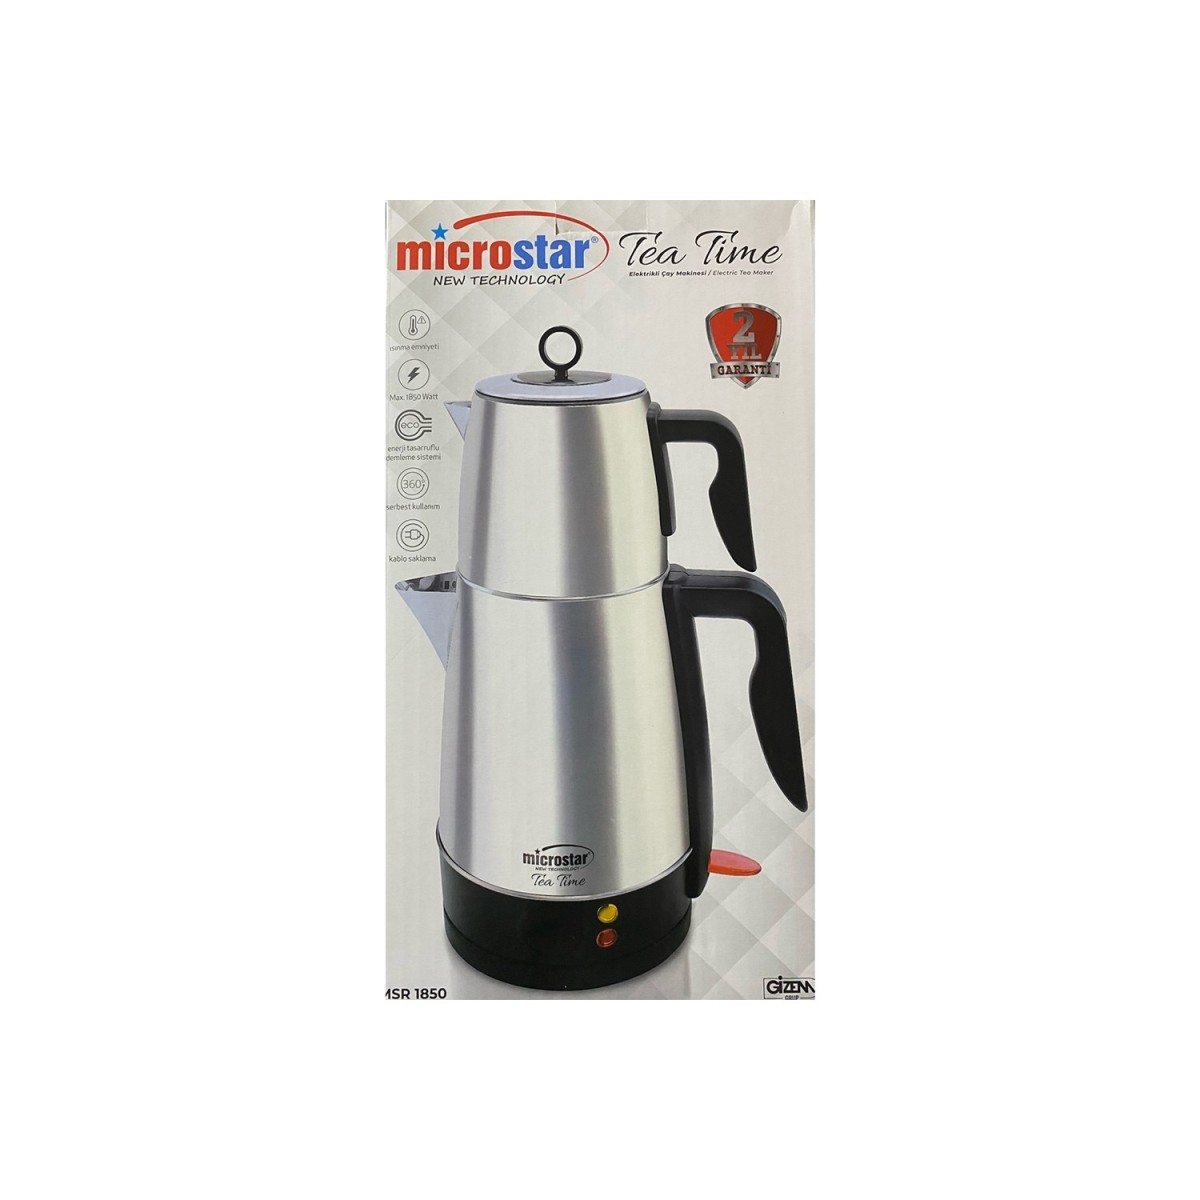 MICROSTAR MSR1850 TEA MAKER 2 IN 1